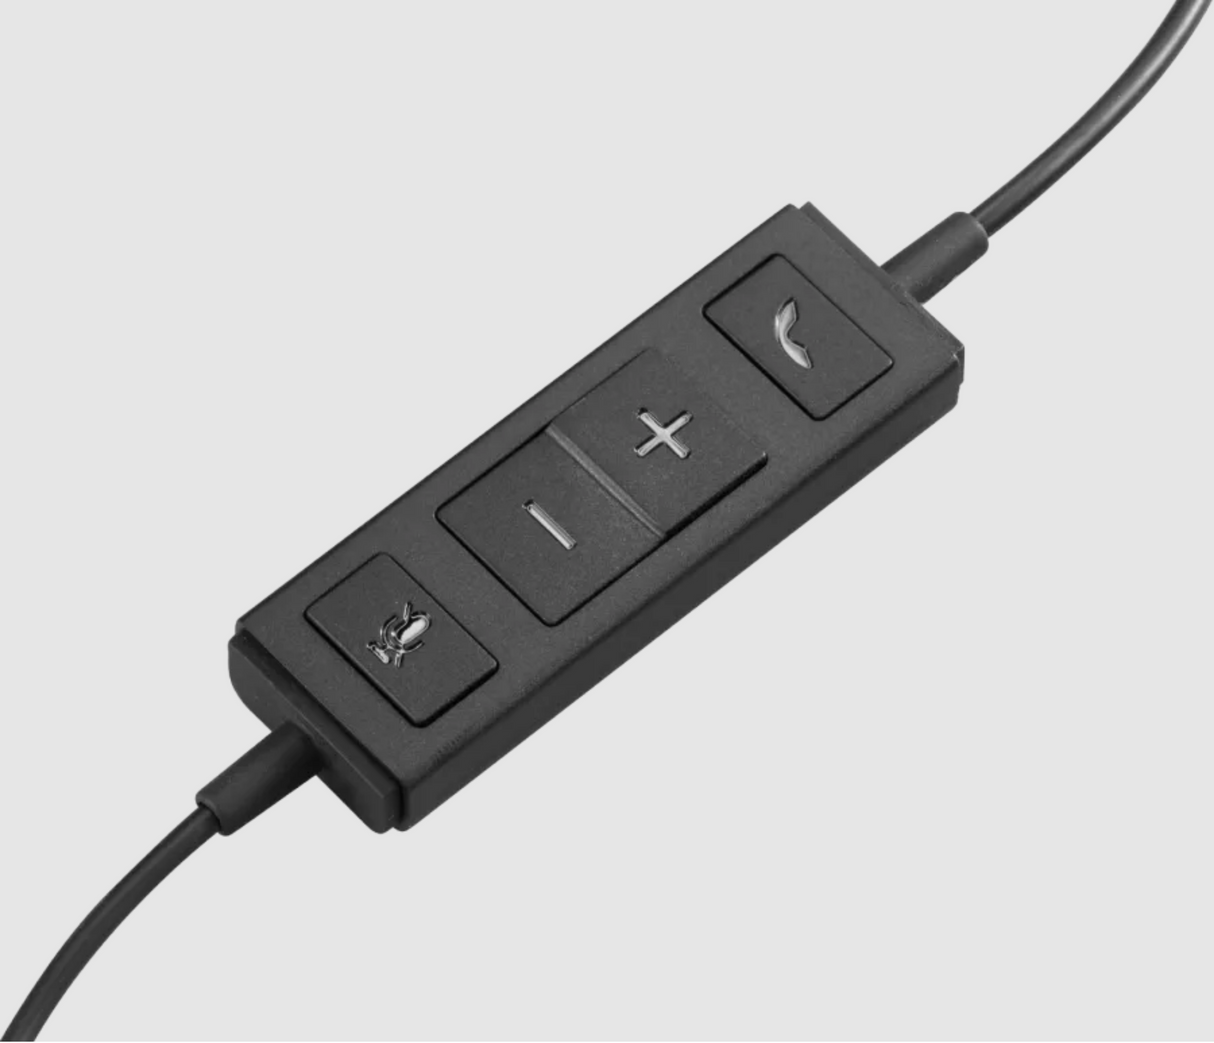 سماعة رأس لوجيتك USB H570e مونو مع ميكروفون عازل للضوضاء - أسود